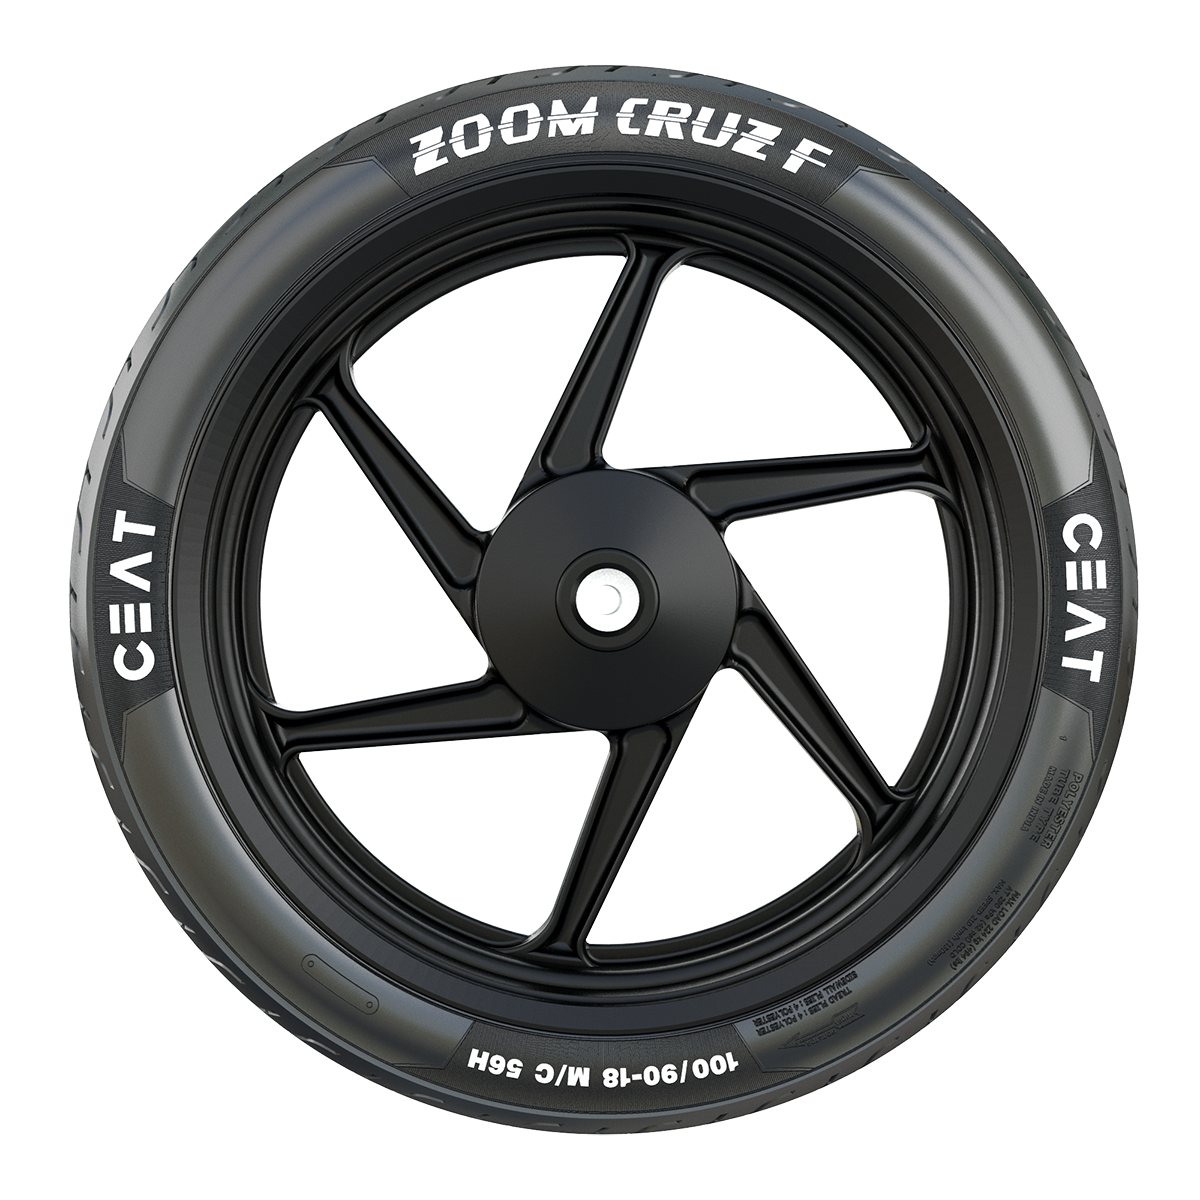 Buy Zoom Cruz F 100/90-18 56H MOTORCYCLE Tyre Online by CEAT